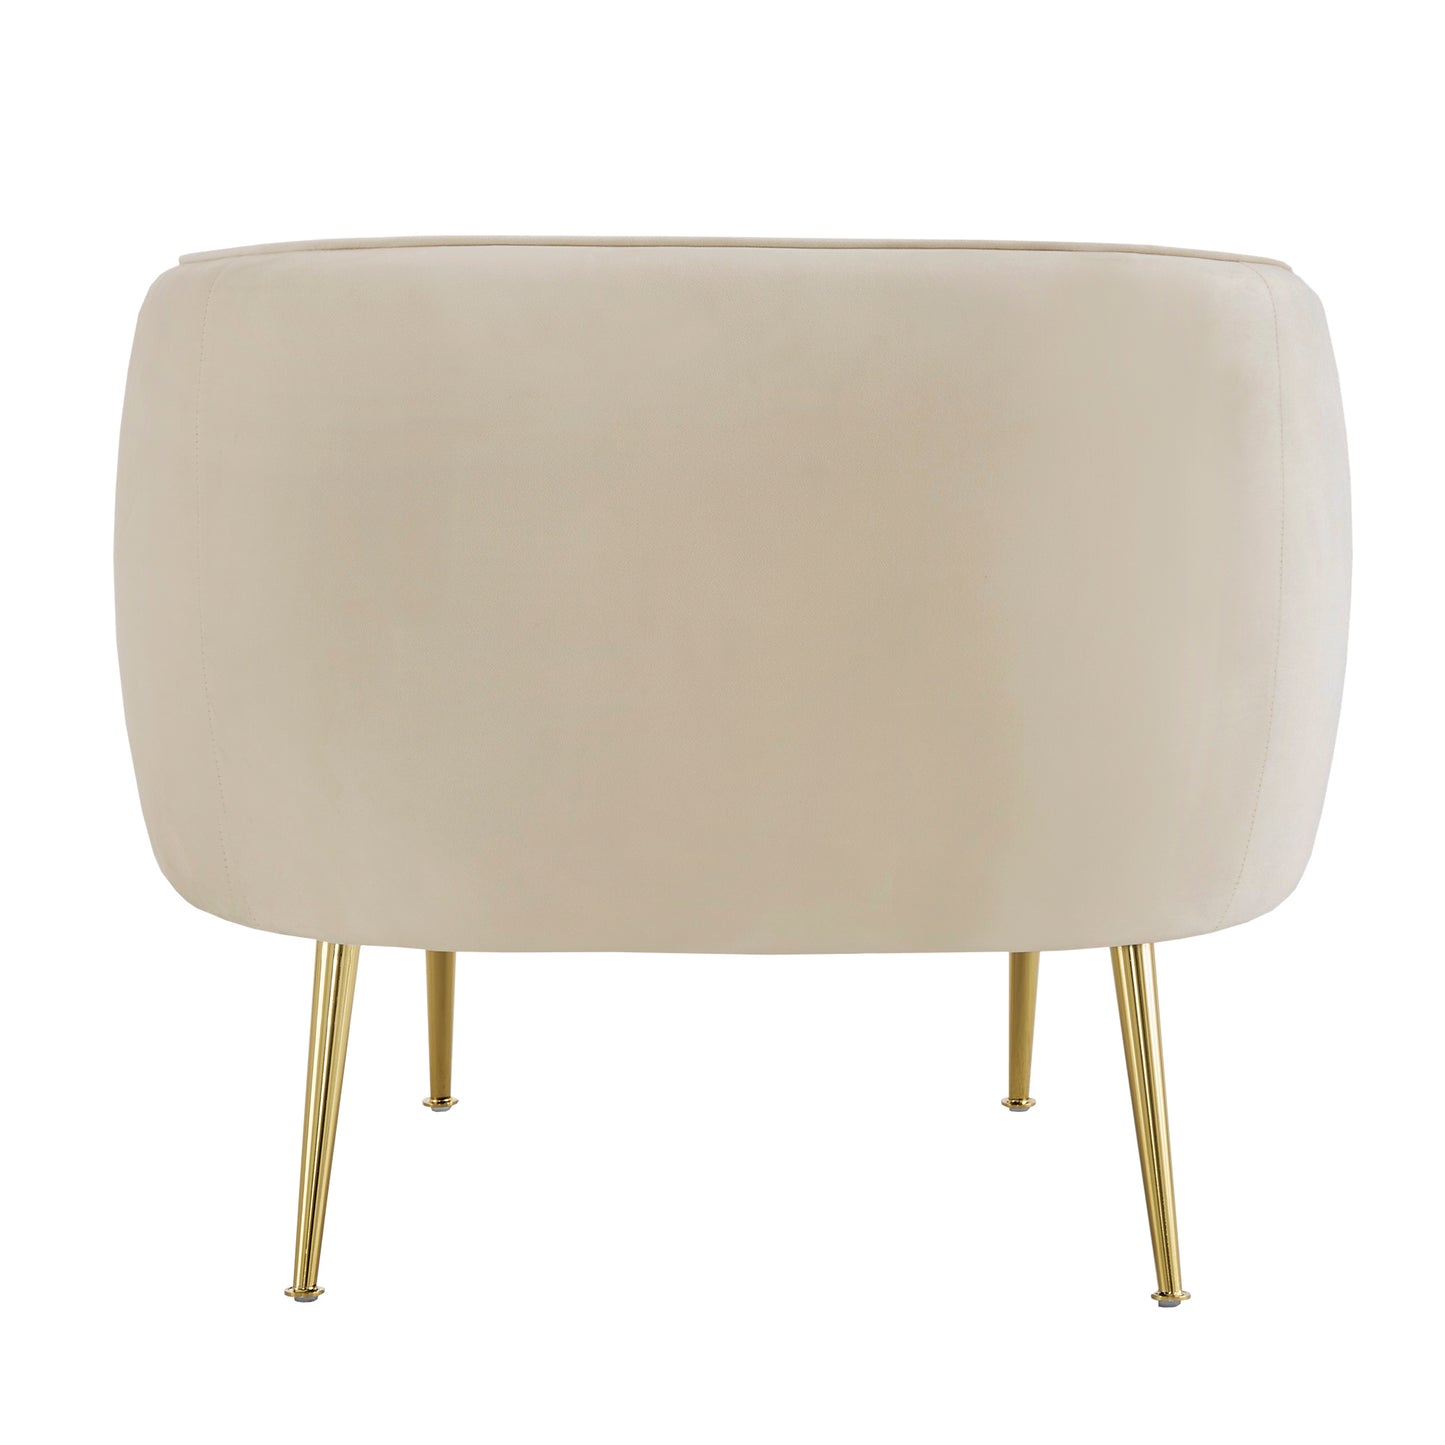 Brass Finish Velvet Upholstered Accent Chair - Beige